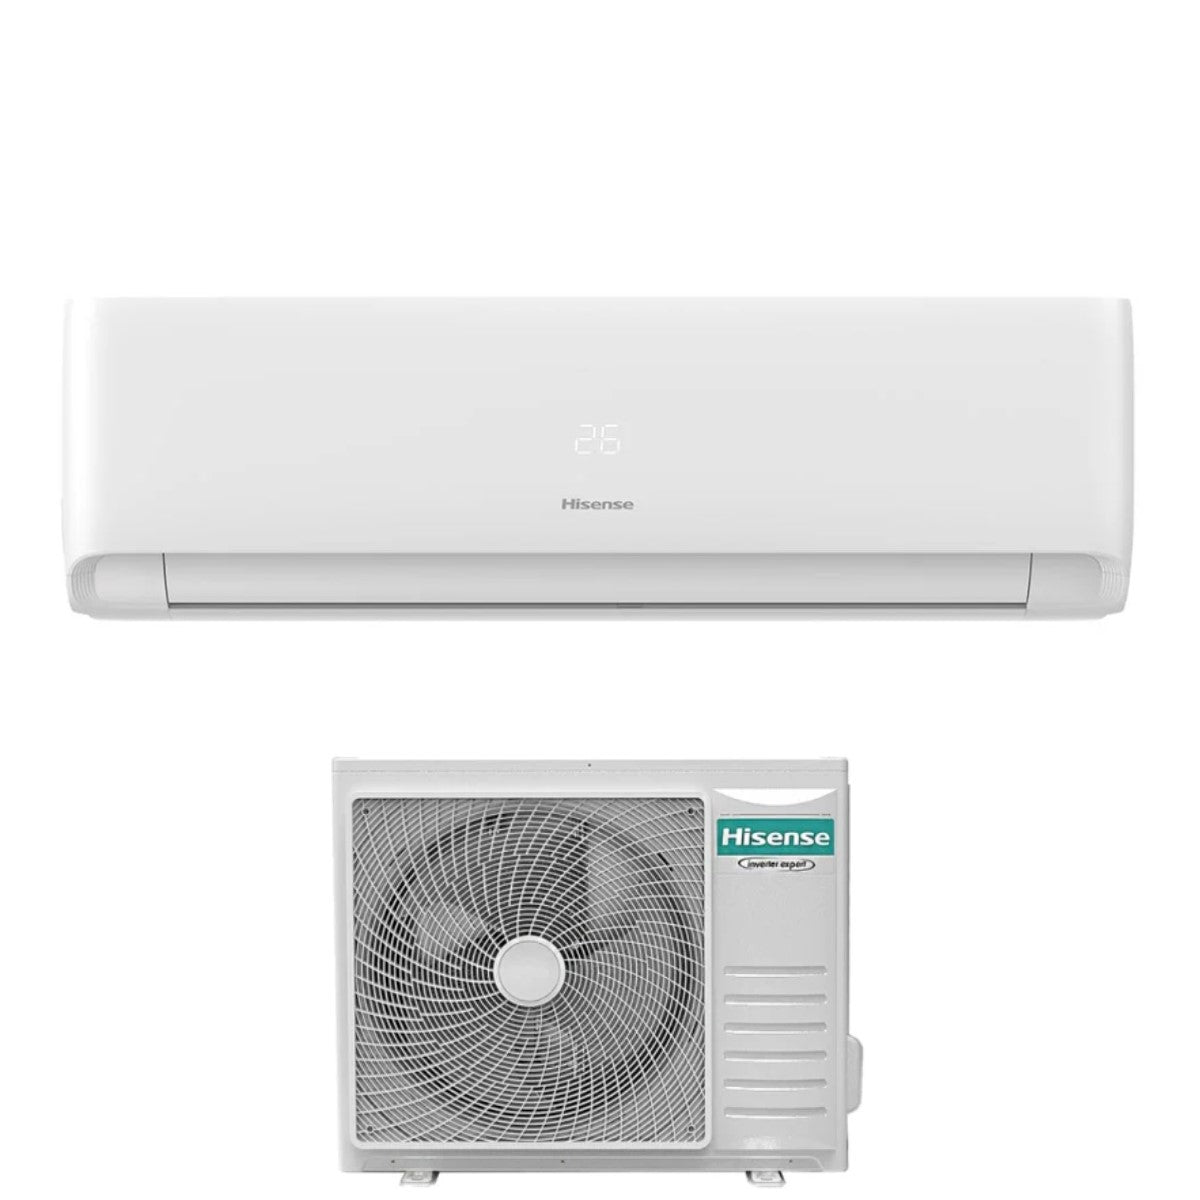 immagine-1-hisense-climatizzatore-condizionatore-hisense-inverter-serie-ecosense-24000-btu-kf70kt01g-r-32-wi-fi-integrato